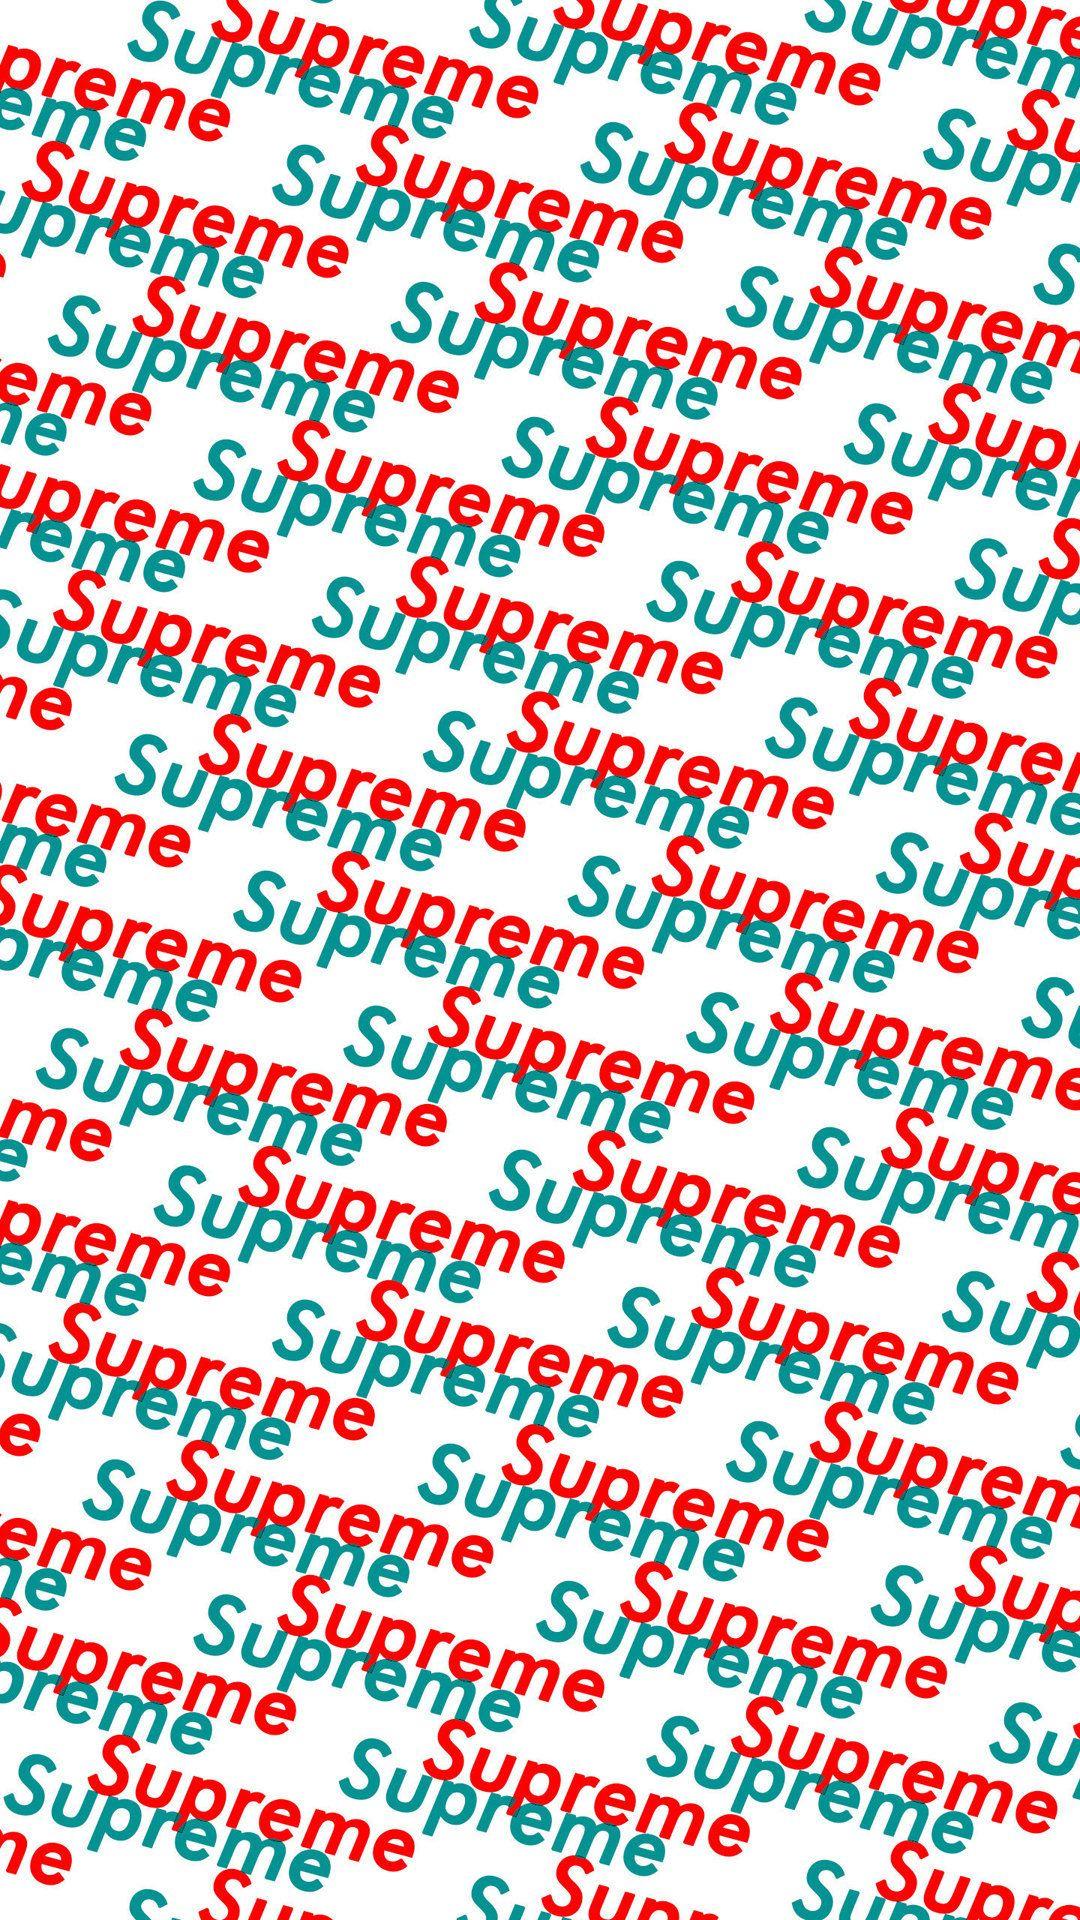 Supreme 3d Touch Wallpaper Image Num 11